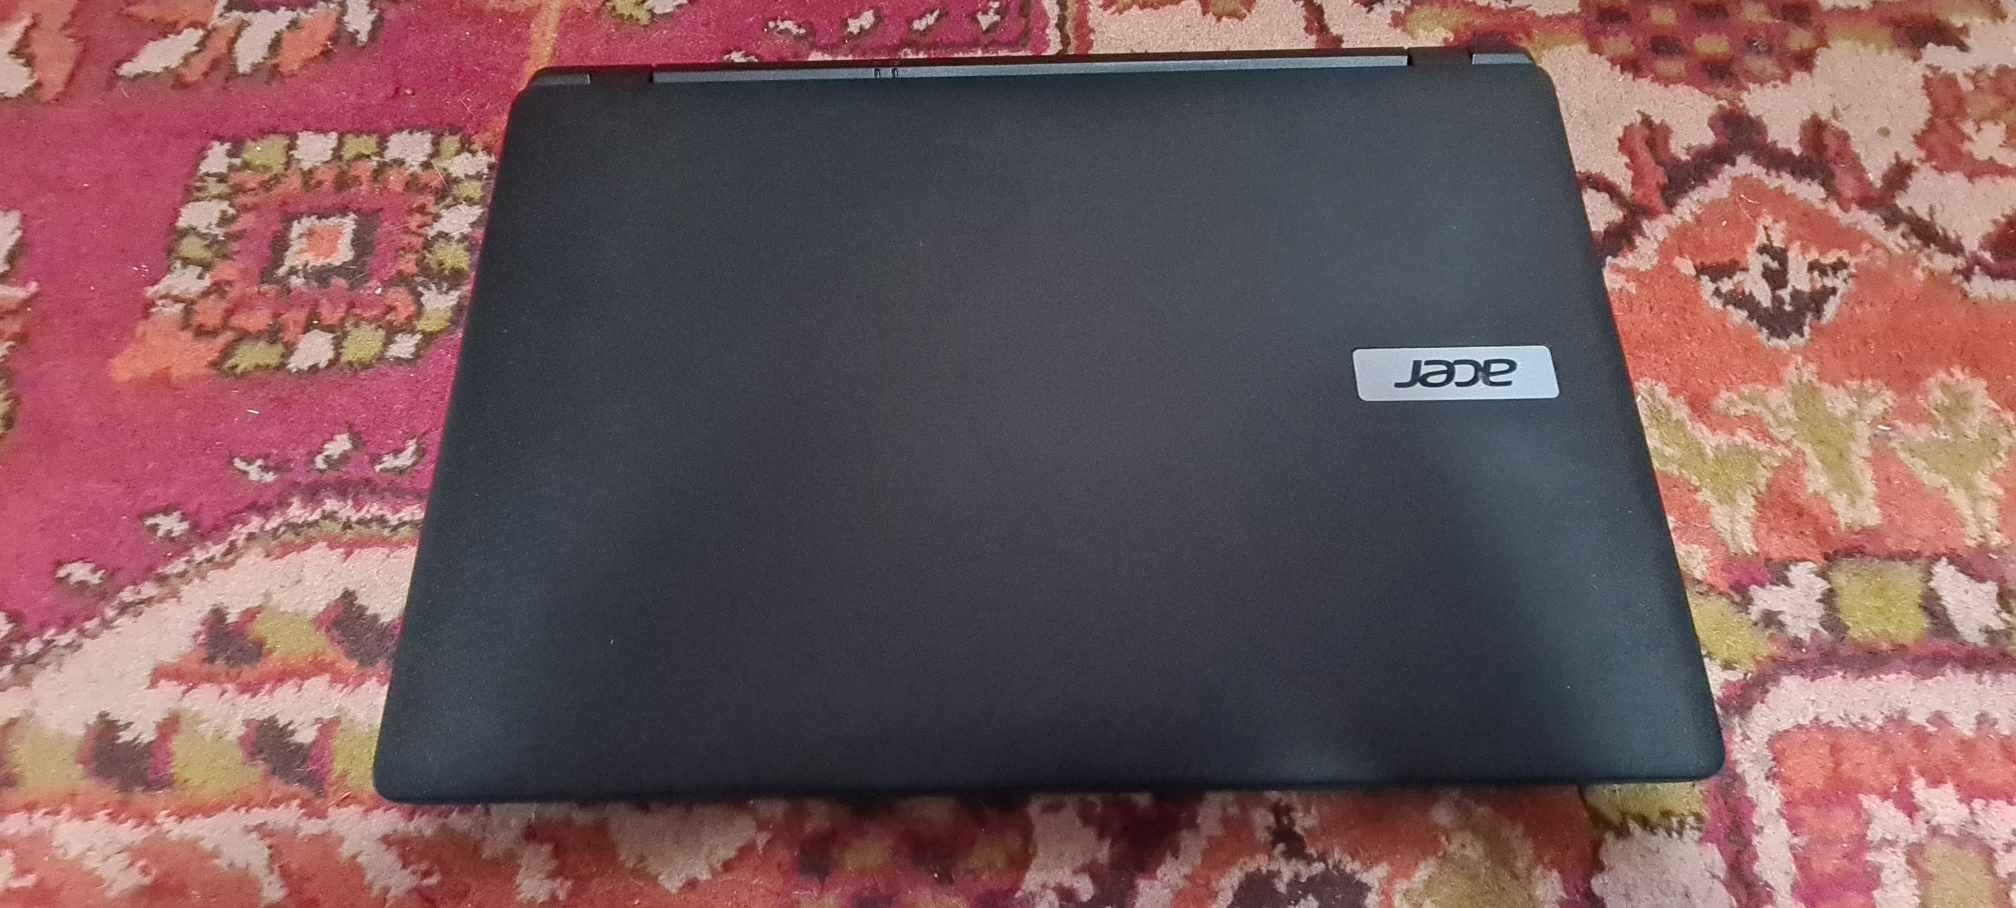 Dezmembrez laptop Acer ES1-512 model MS2394 placa de baza functionala